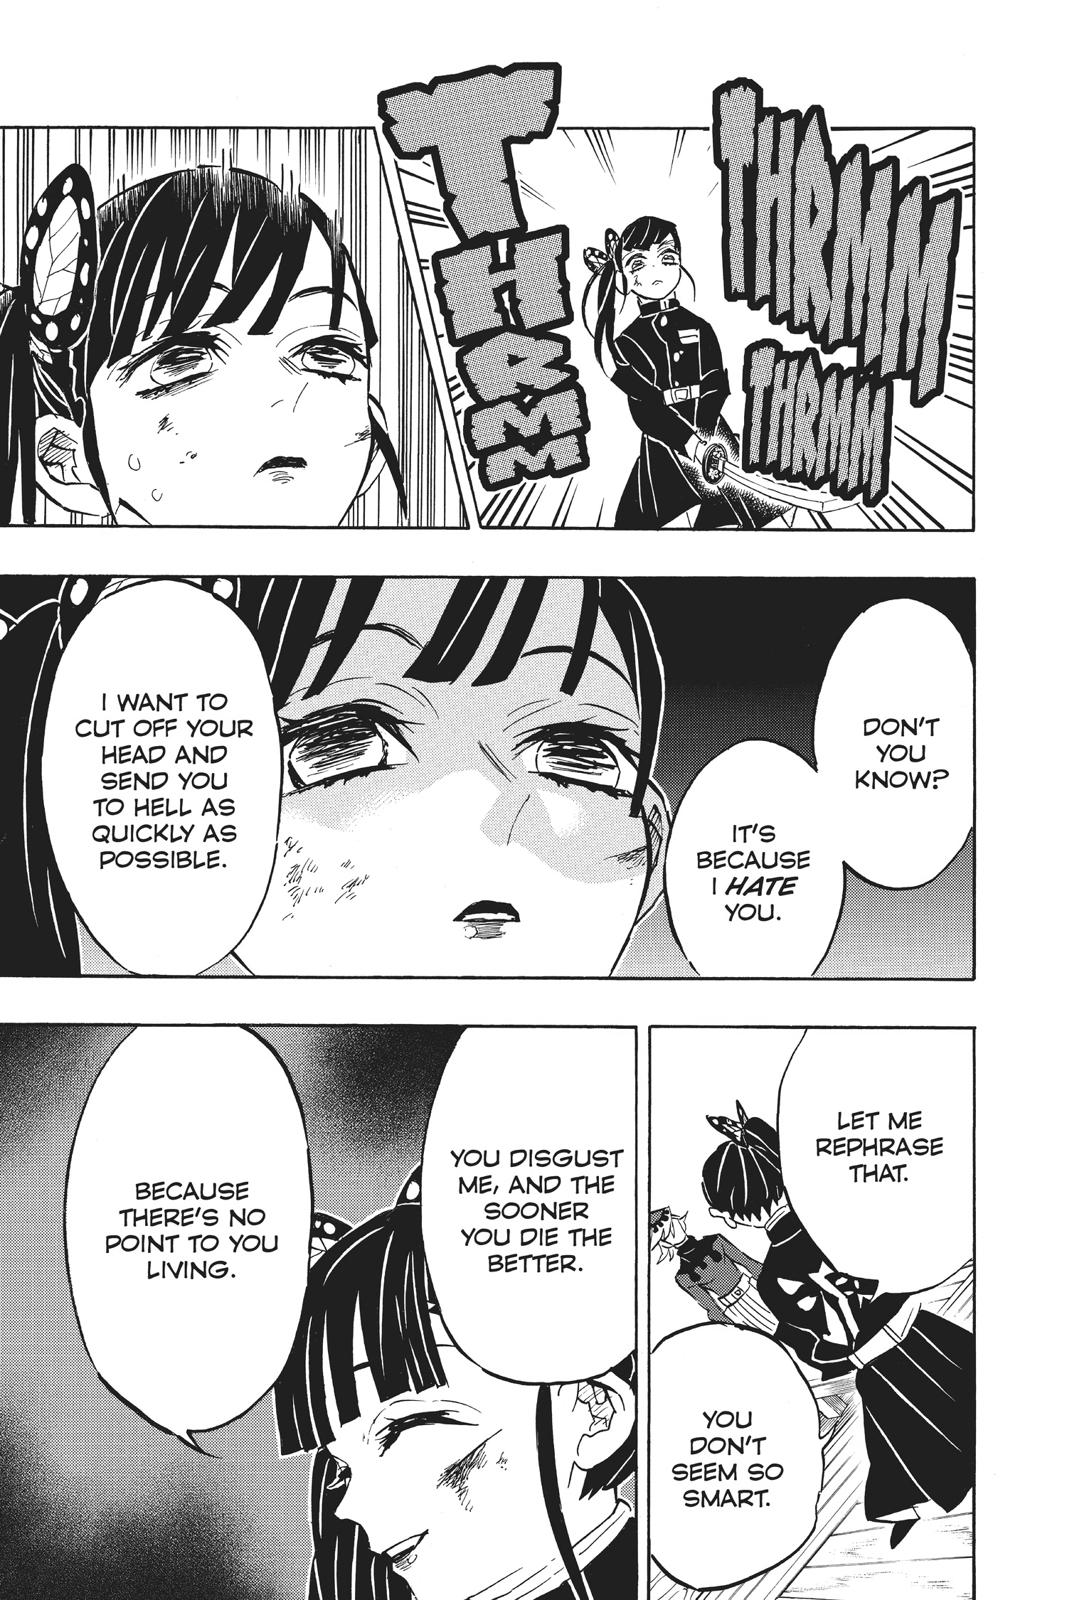 Demon Slayer Manga Manga Chapter - 157 - image 13